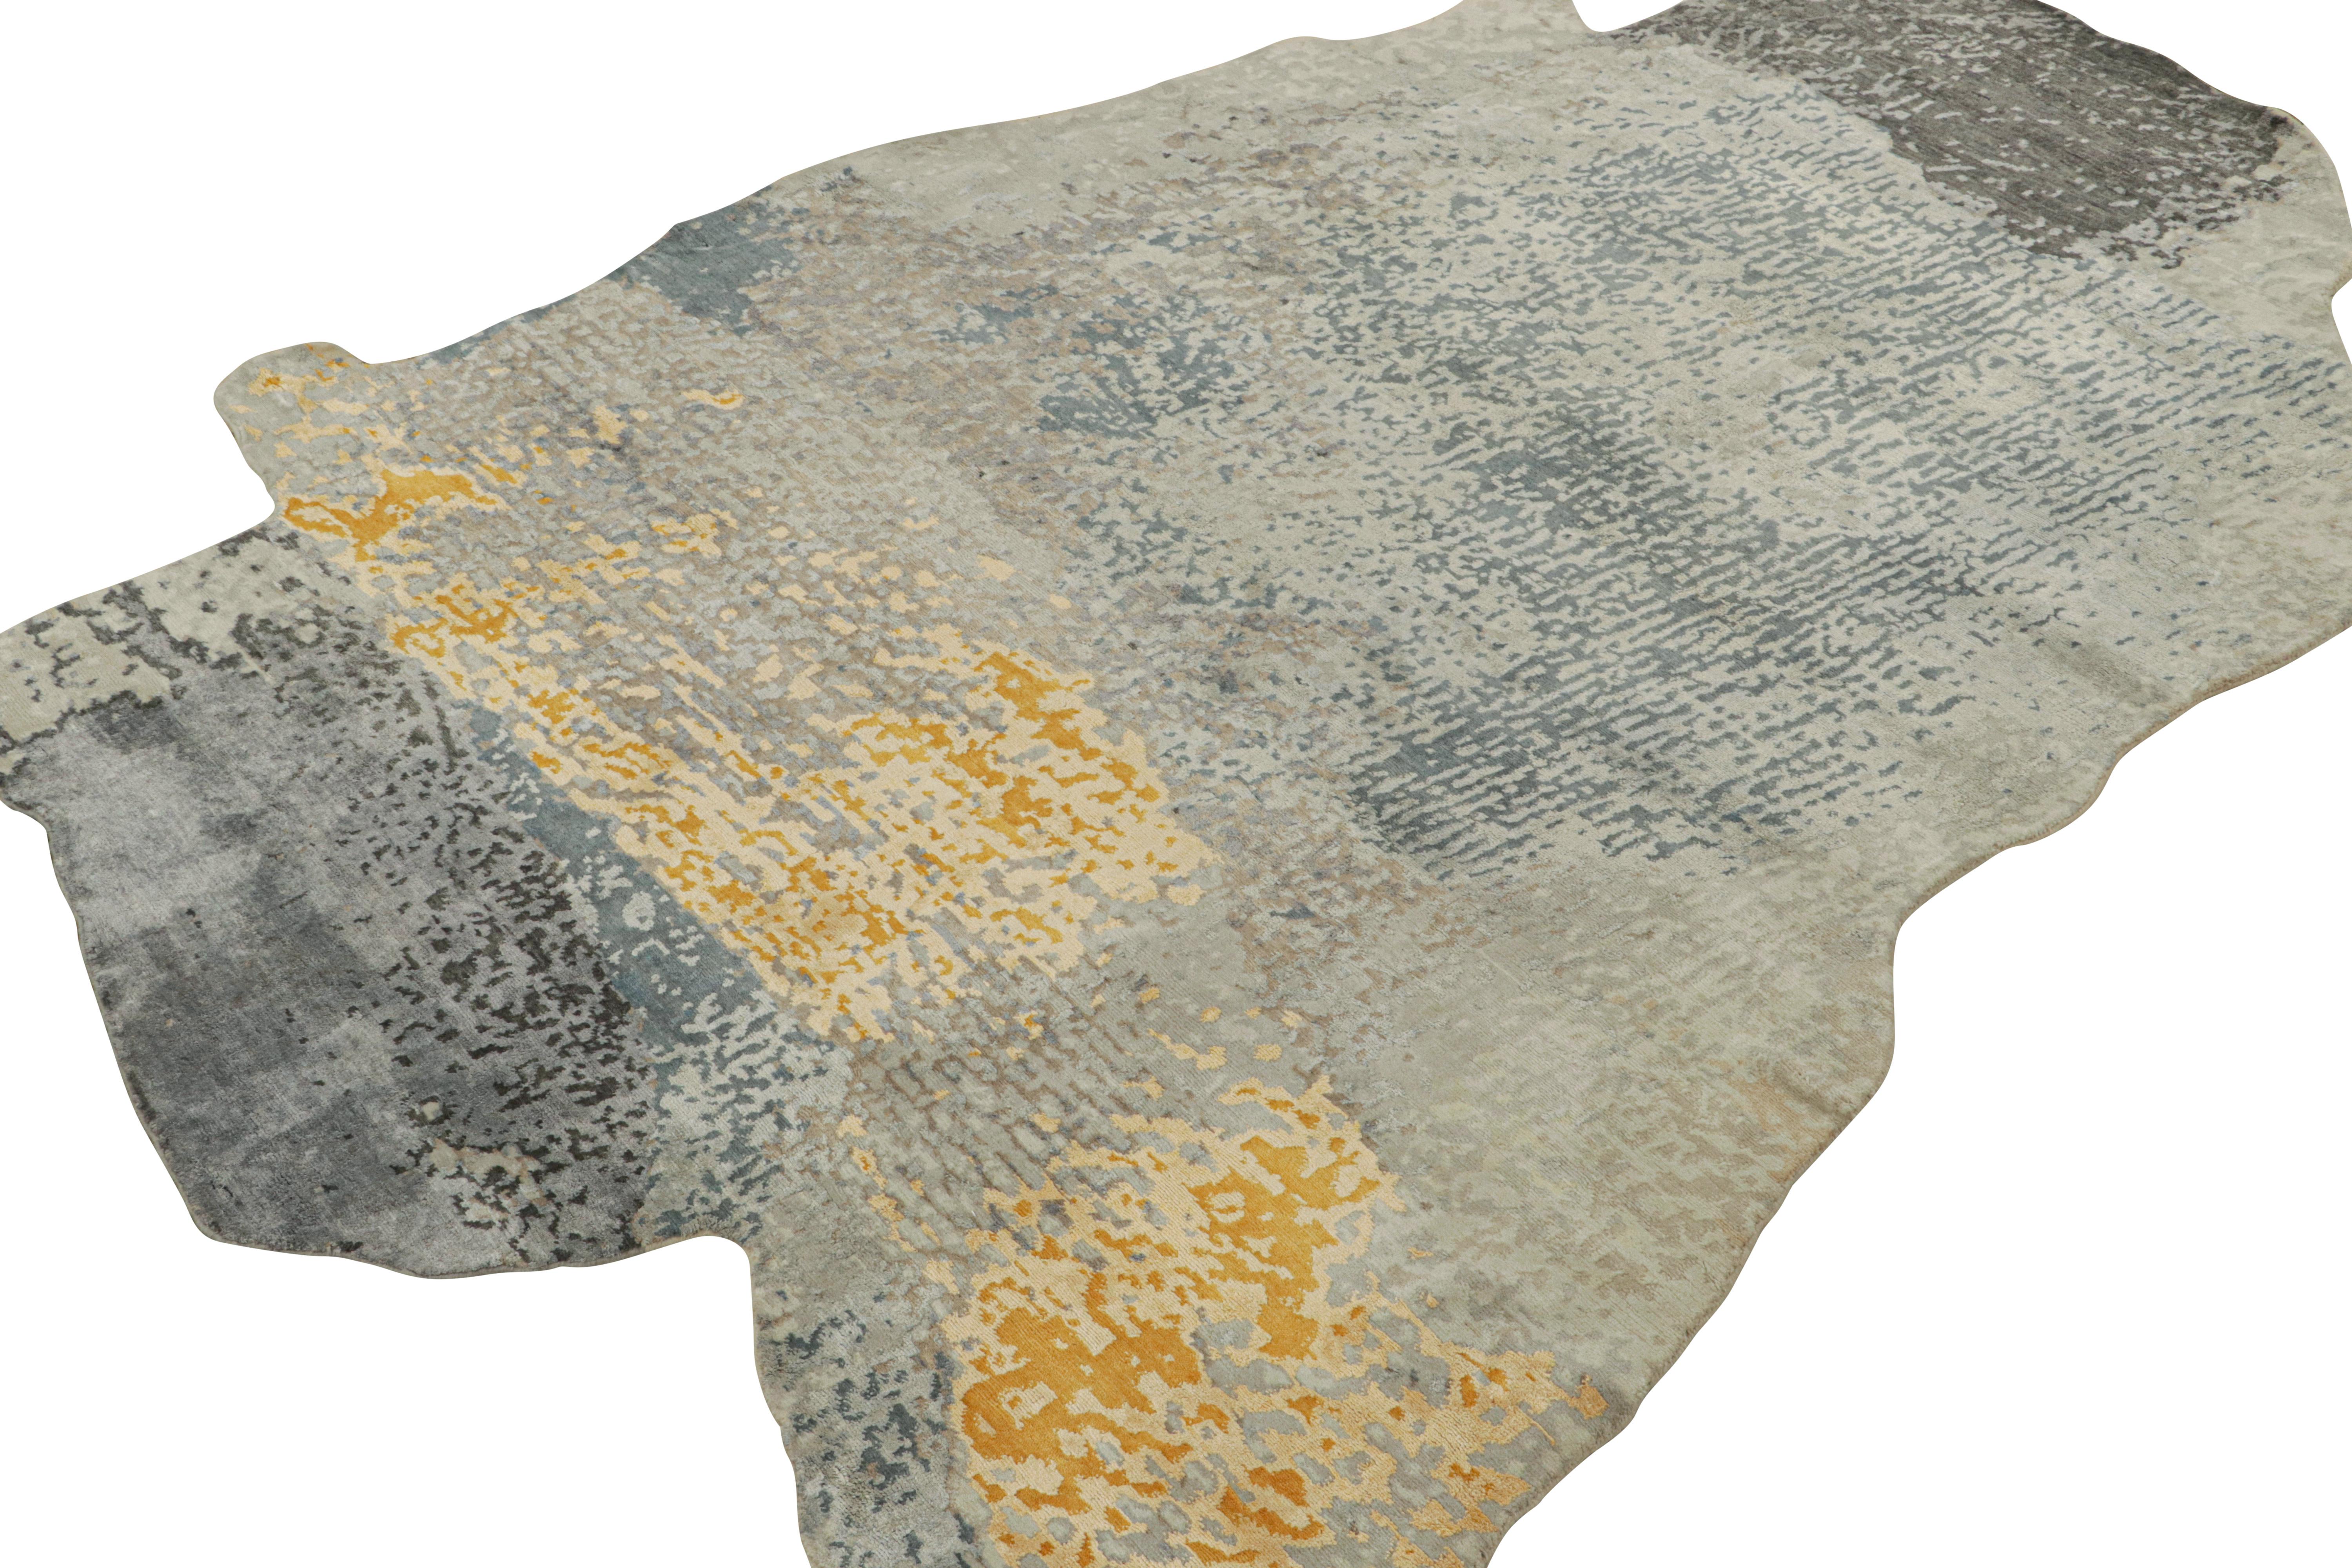 Ce tapis 8x10 de forme irrégulière est un nouvel ajout à la collection de tapis modernes de Rug & Kilim. Noué à la main en laine, coton et soie, son design explore l'art abstrait dans une nouvelle mode audacieuse et une qualité complexe. .

Ce